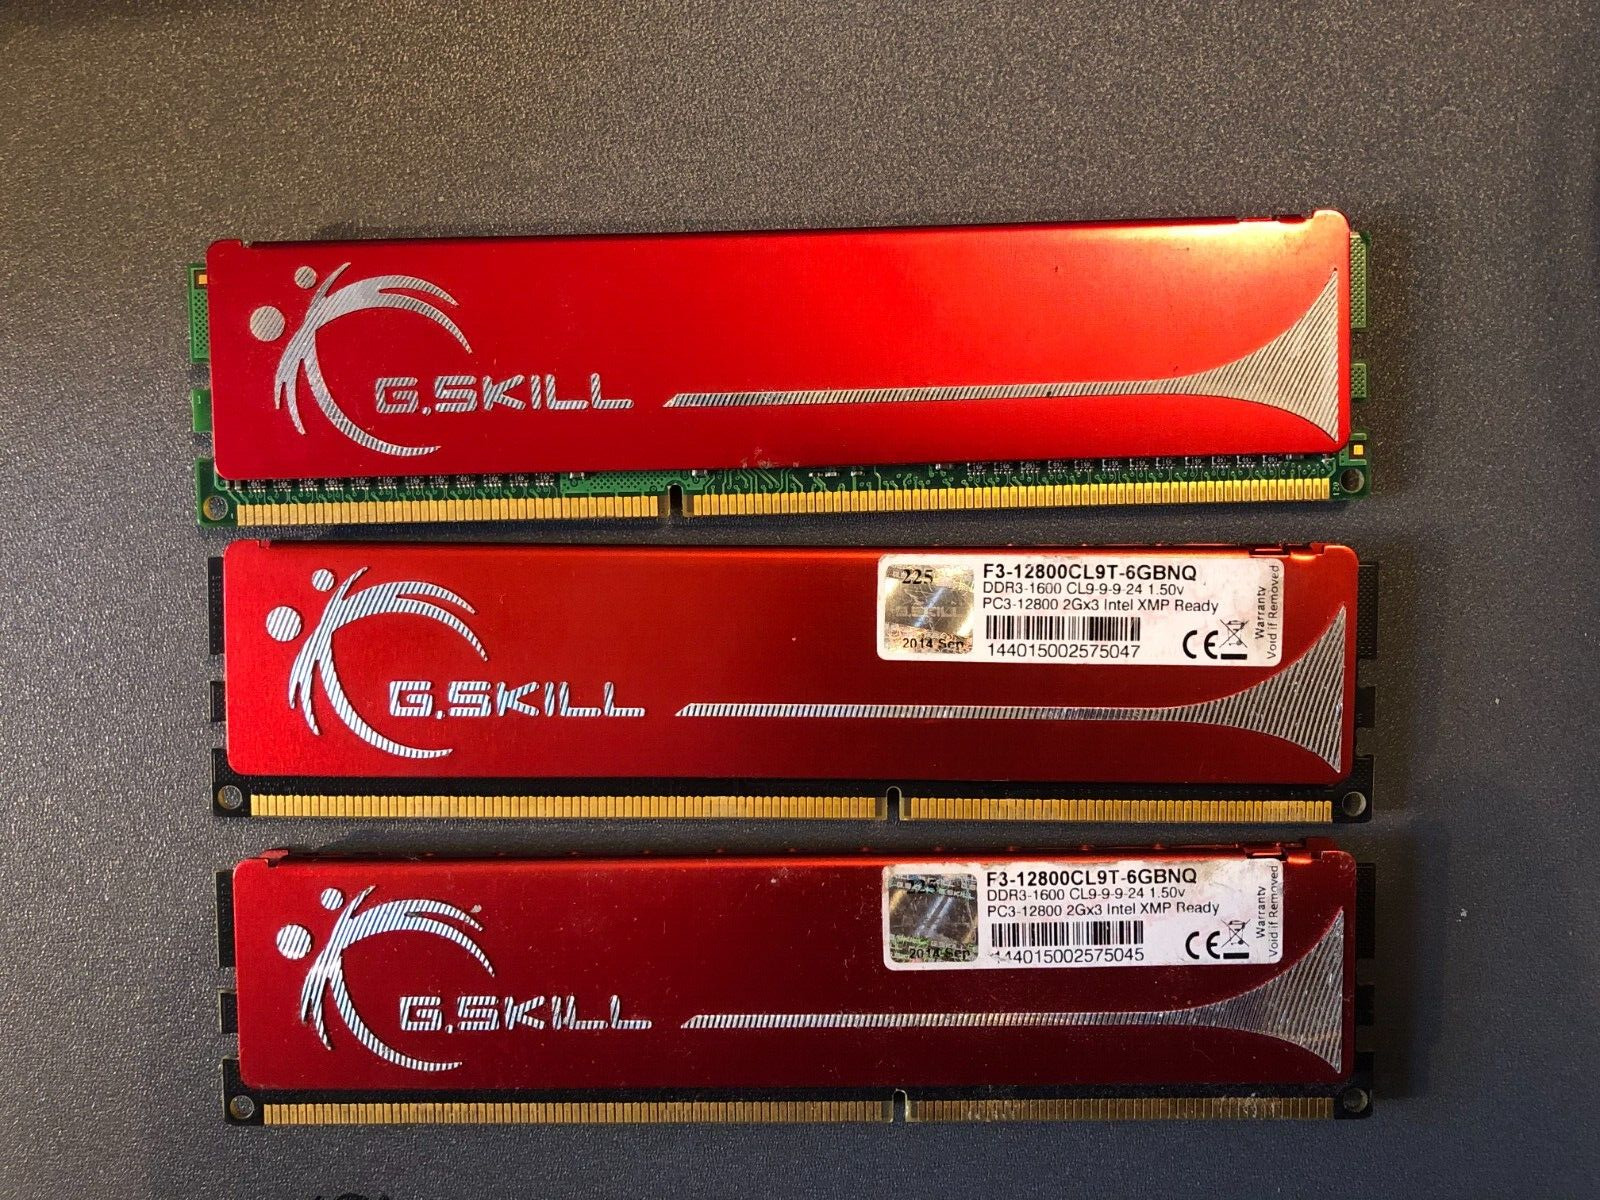 G.Skill 6GB (3X2GB) F3-12800CL9T-6GBNQ PC3-12800 intel XMP SDRAM Memory